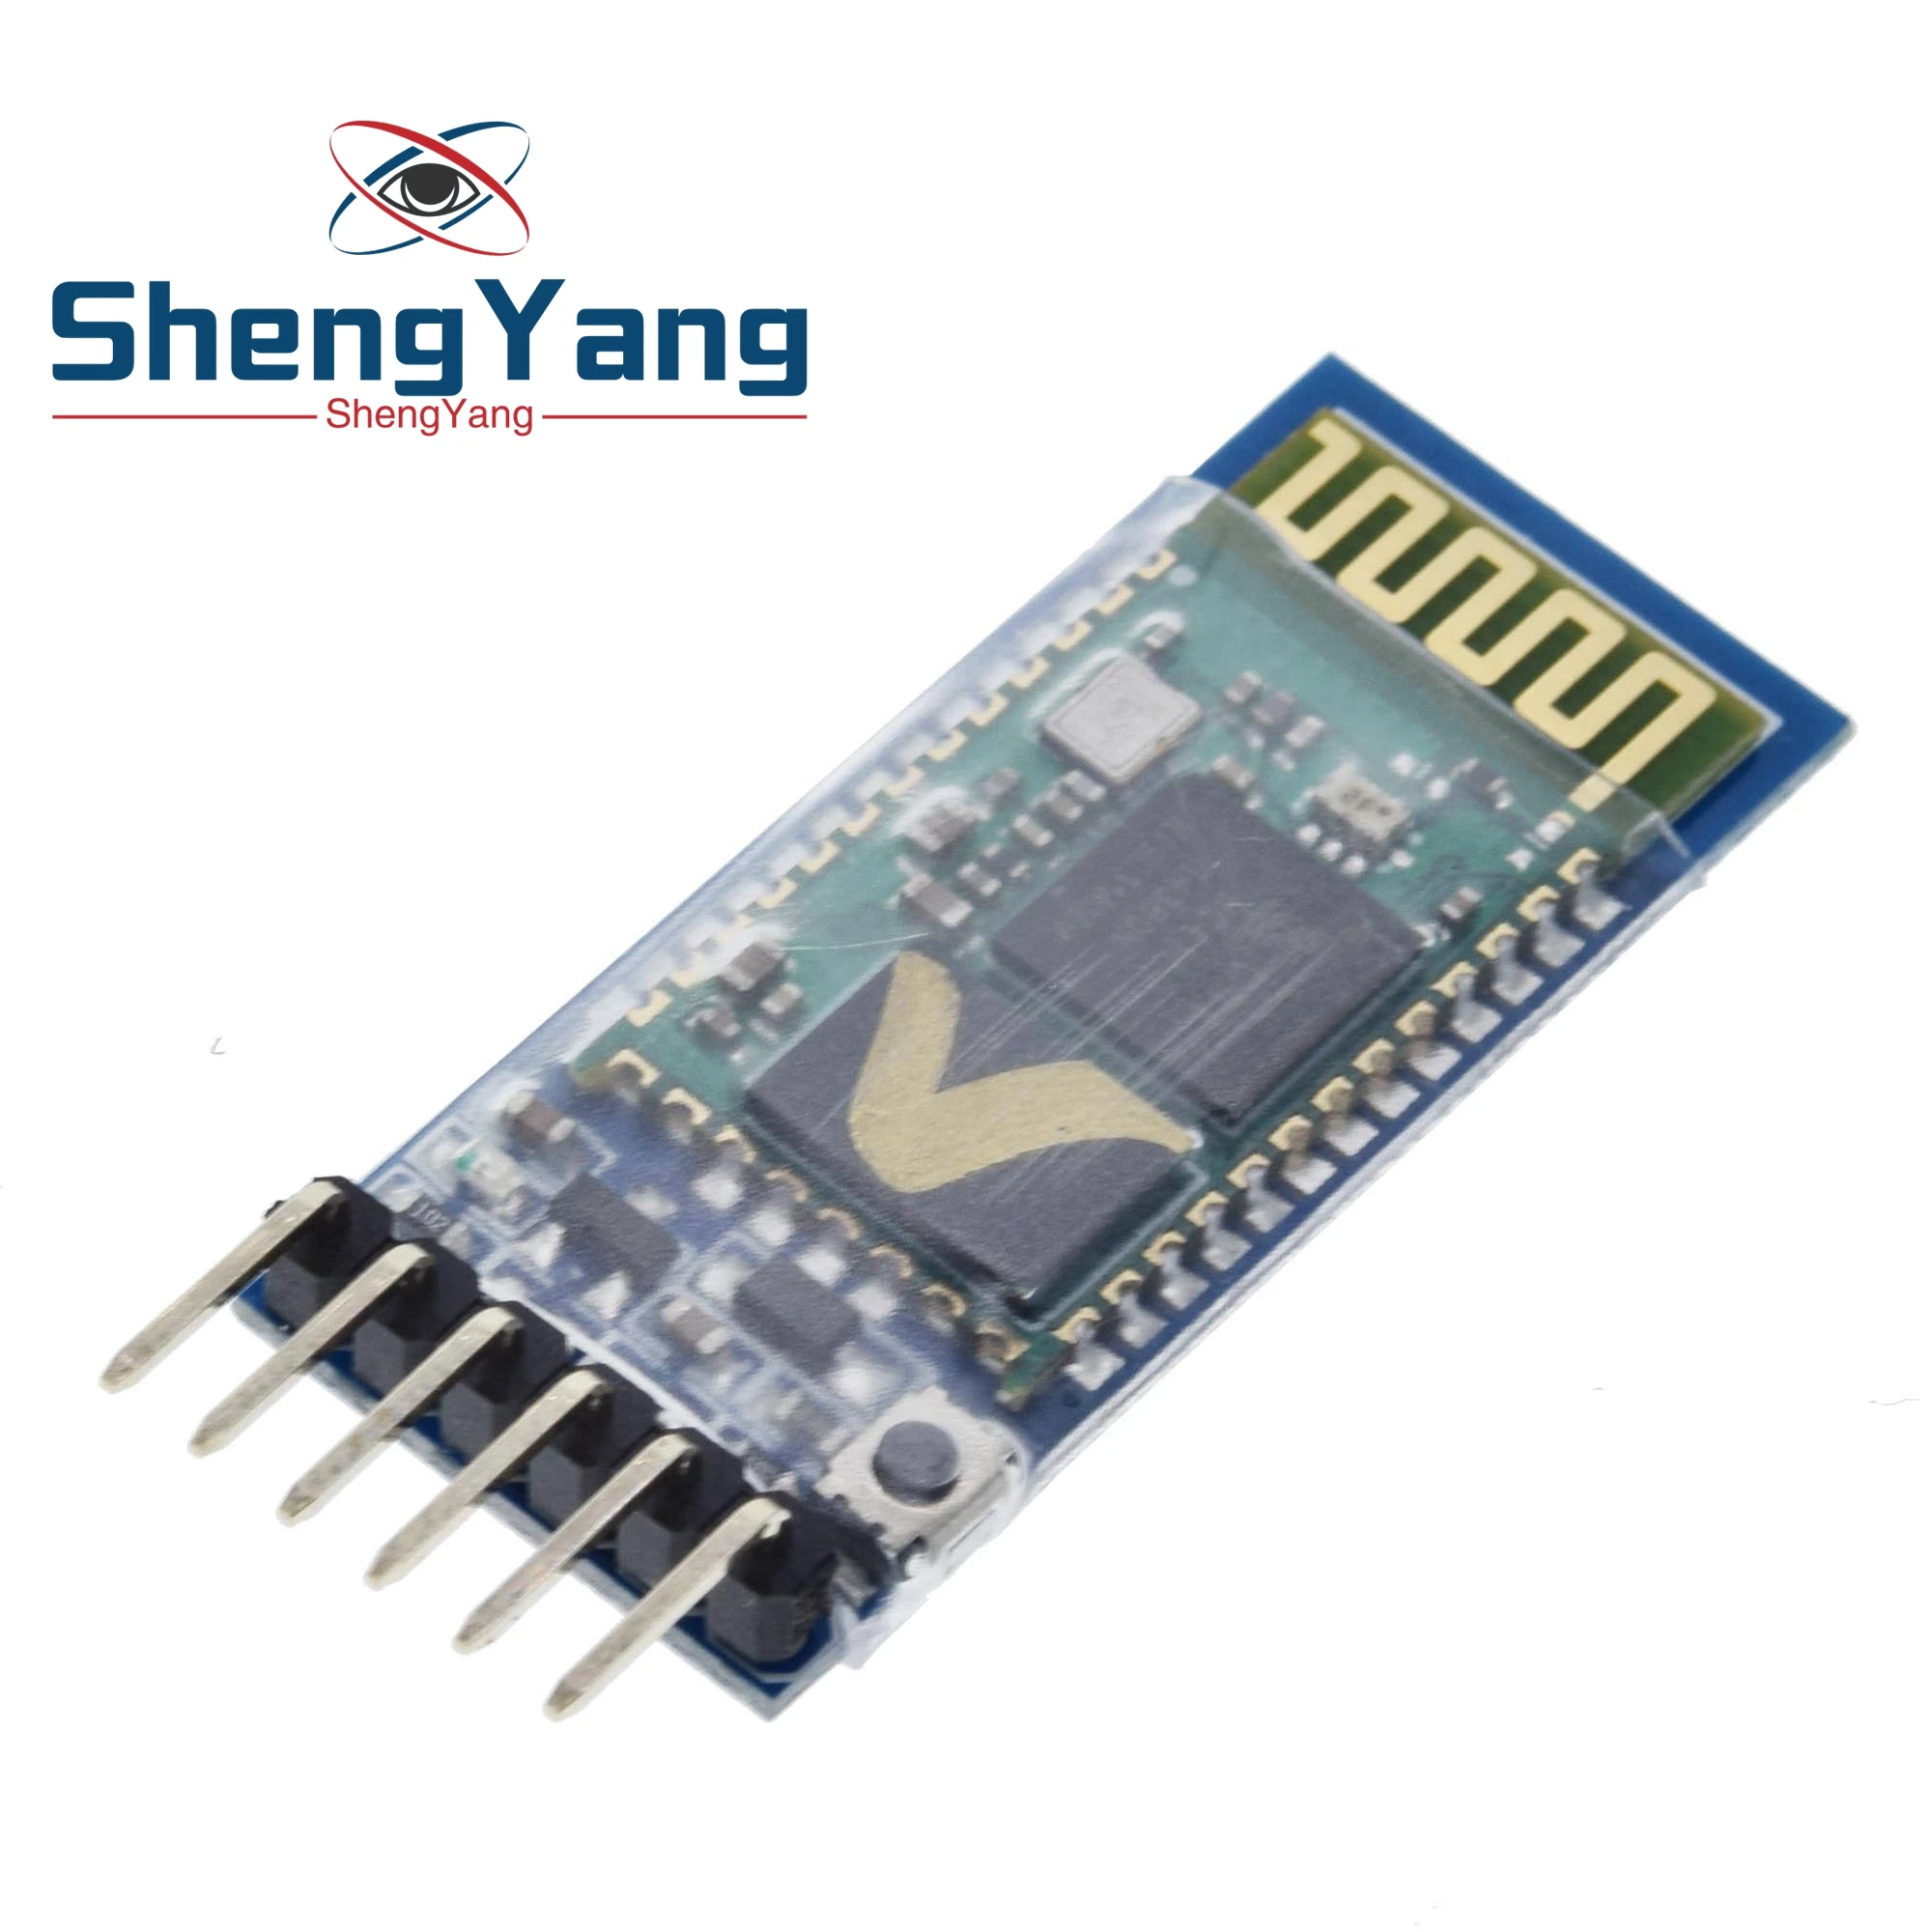 1 шт. ShengYang HC-05 модуль приемопередатчика Bluetooth 2,4G RF беспроводной промышленный модуль Bluetooth RS232/конвертер TTL в UART